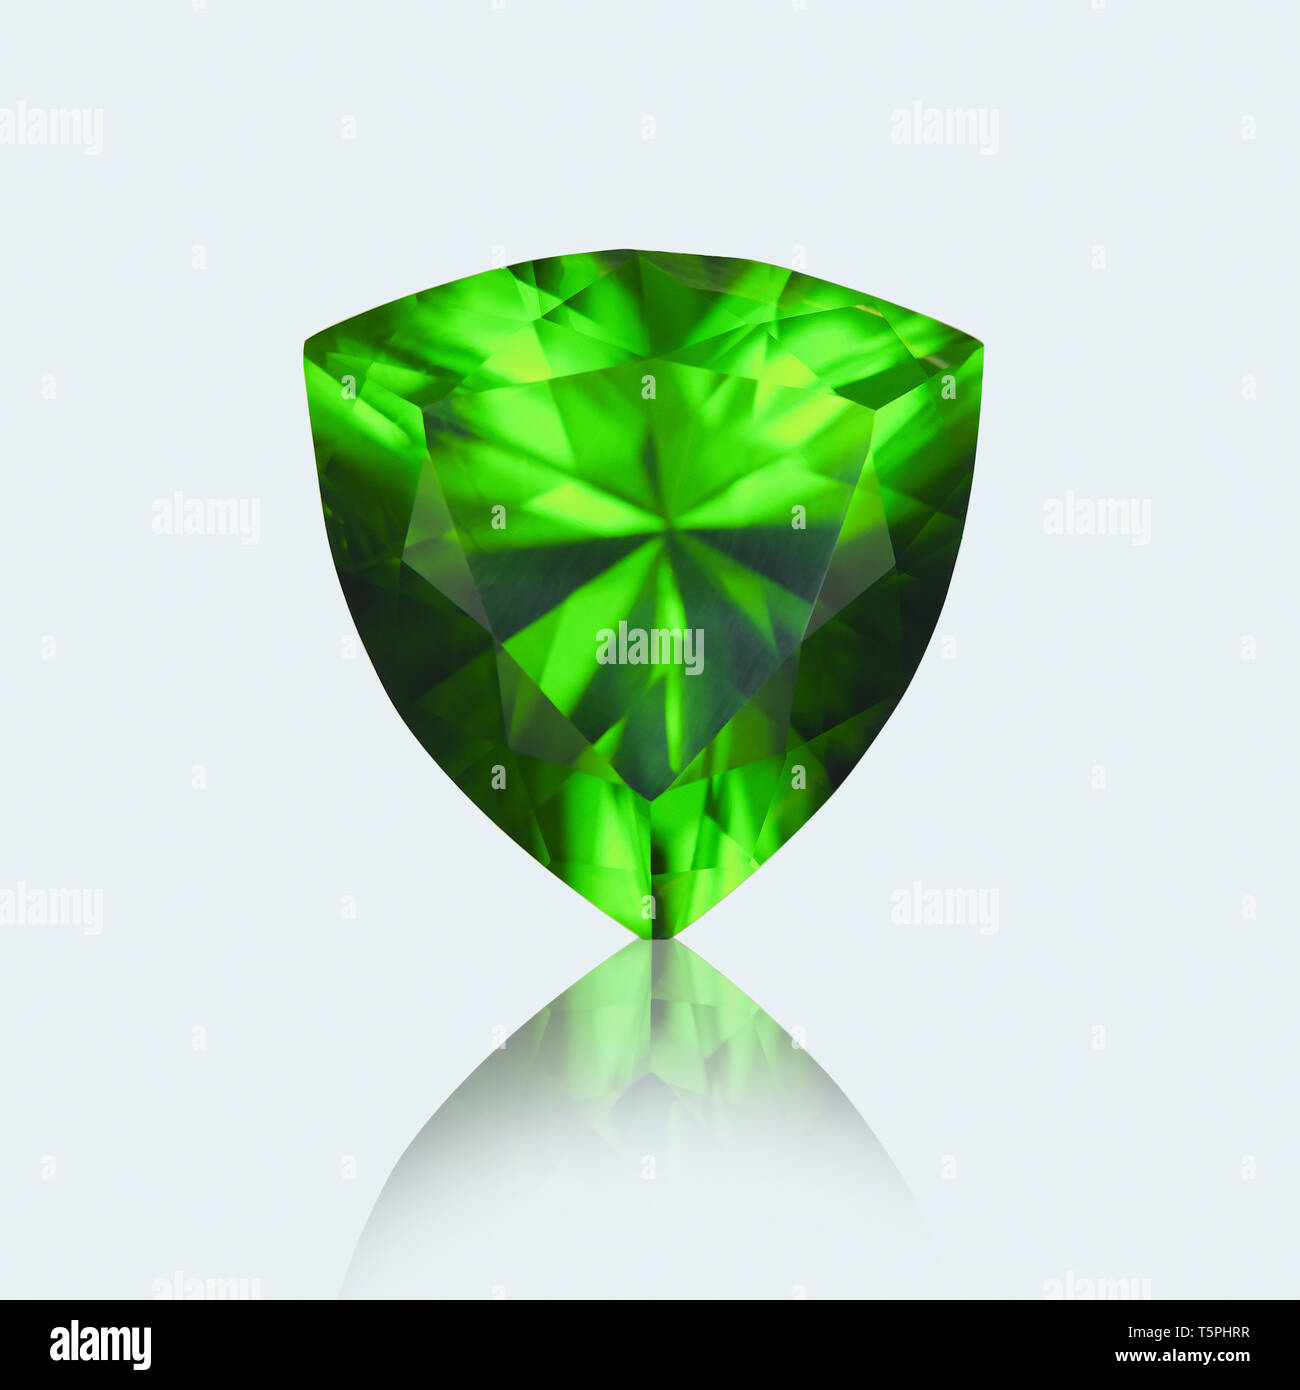 Trillion cut, Trillion cut gemstone, Emerald, peridot, Trillion cut Emerald, Emerald Gemstone, Trillion cut Peridot, Peridot gemstone Stock Photo